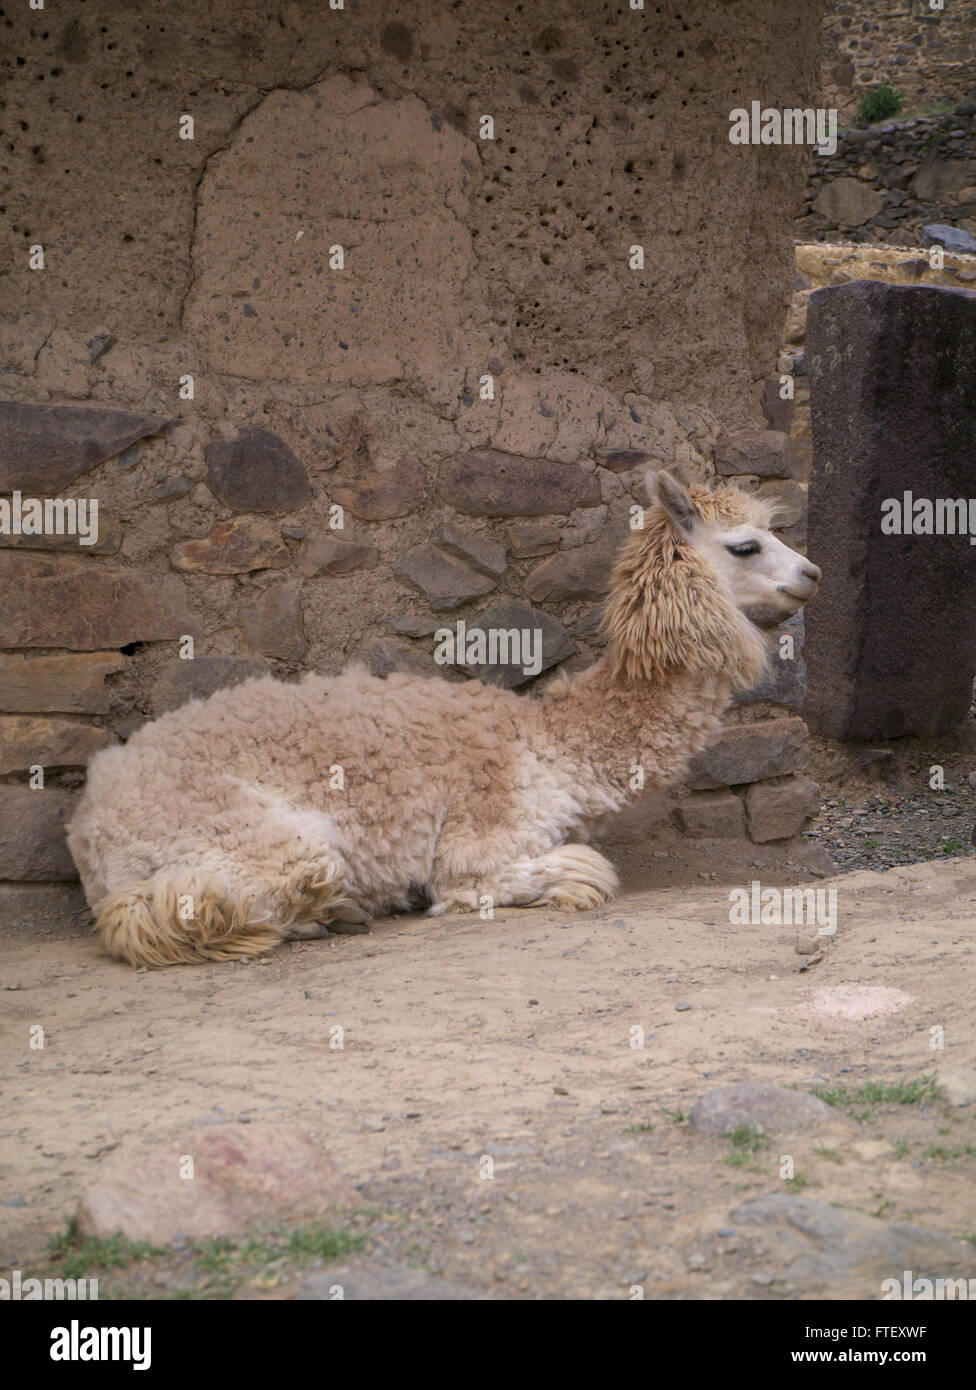 Llama or alpaca at Machu Picchu Peru Stock Photo